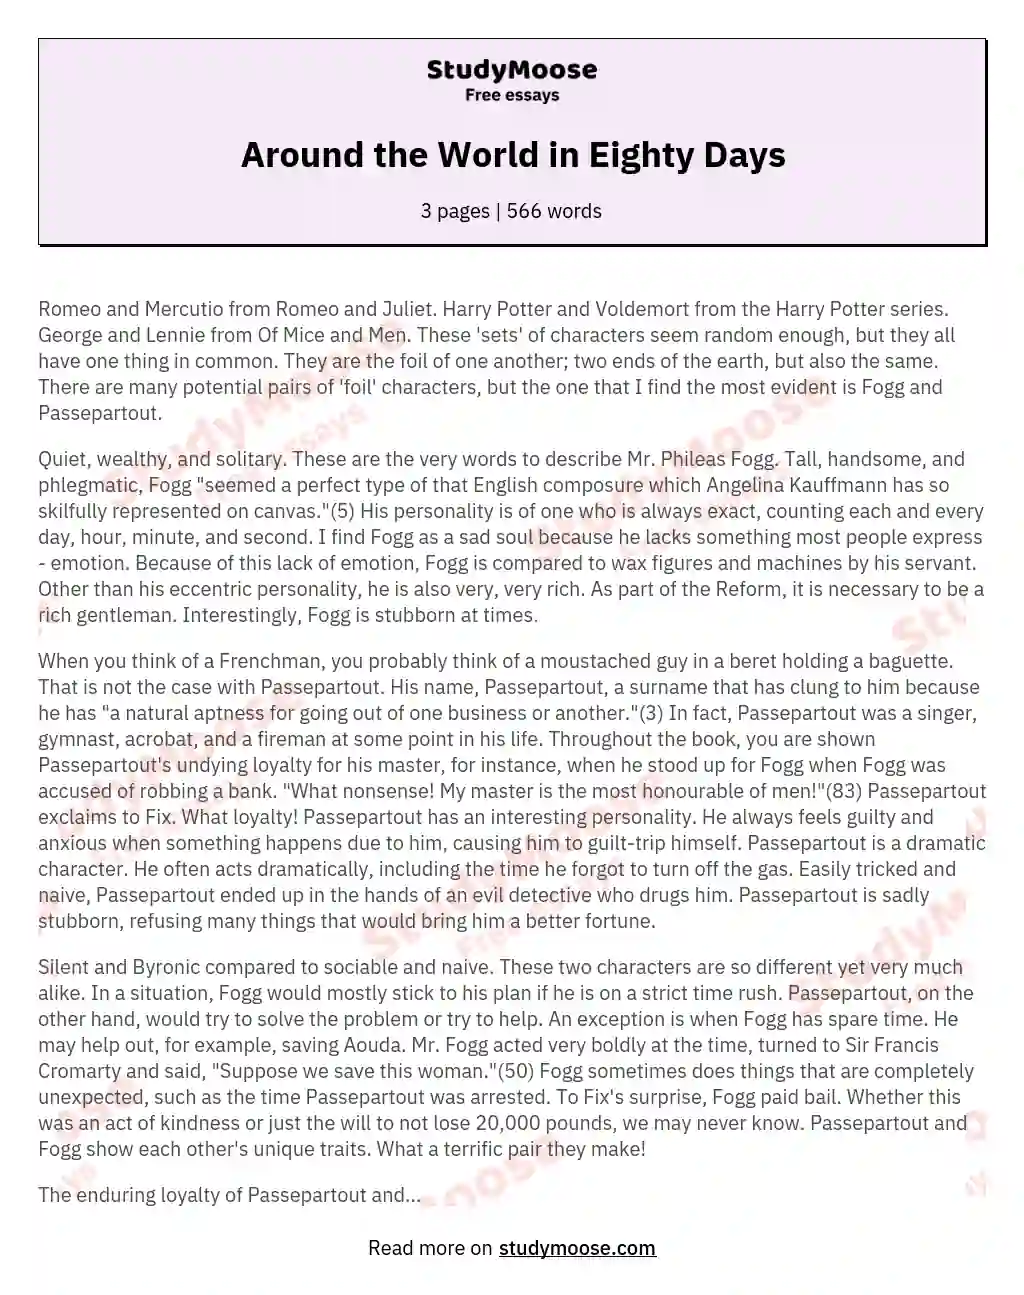 Around the World in Eighty Days essay